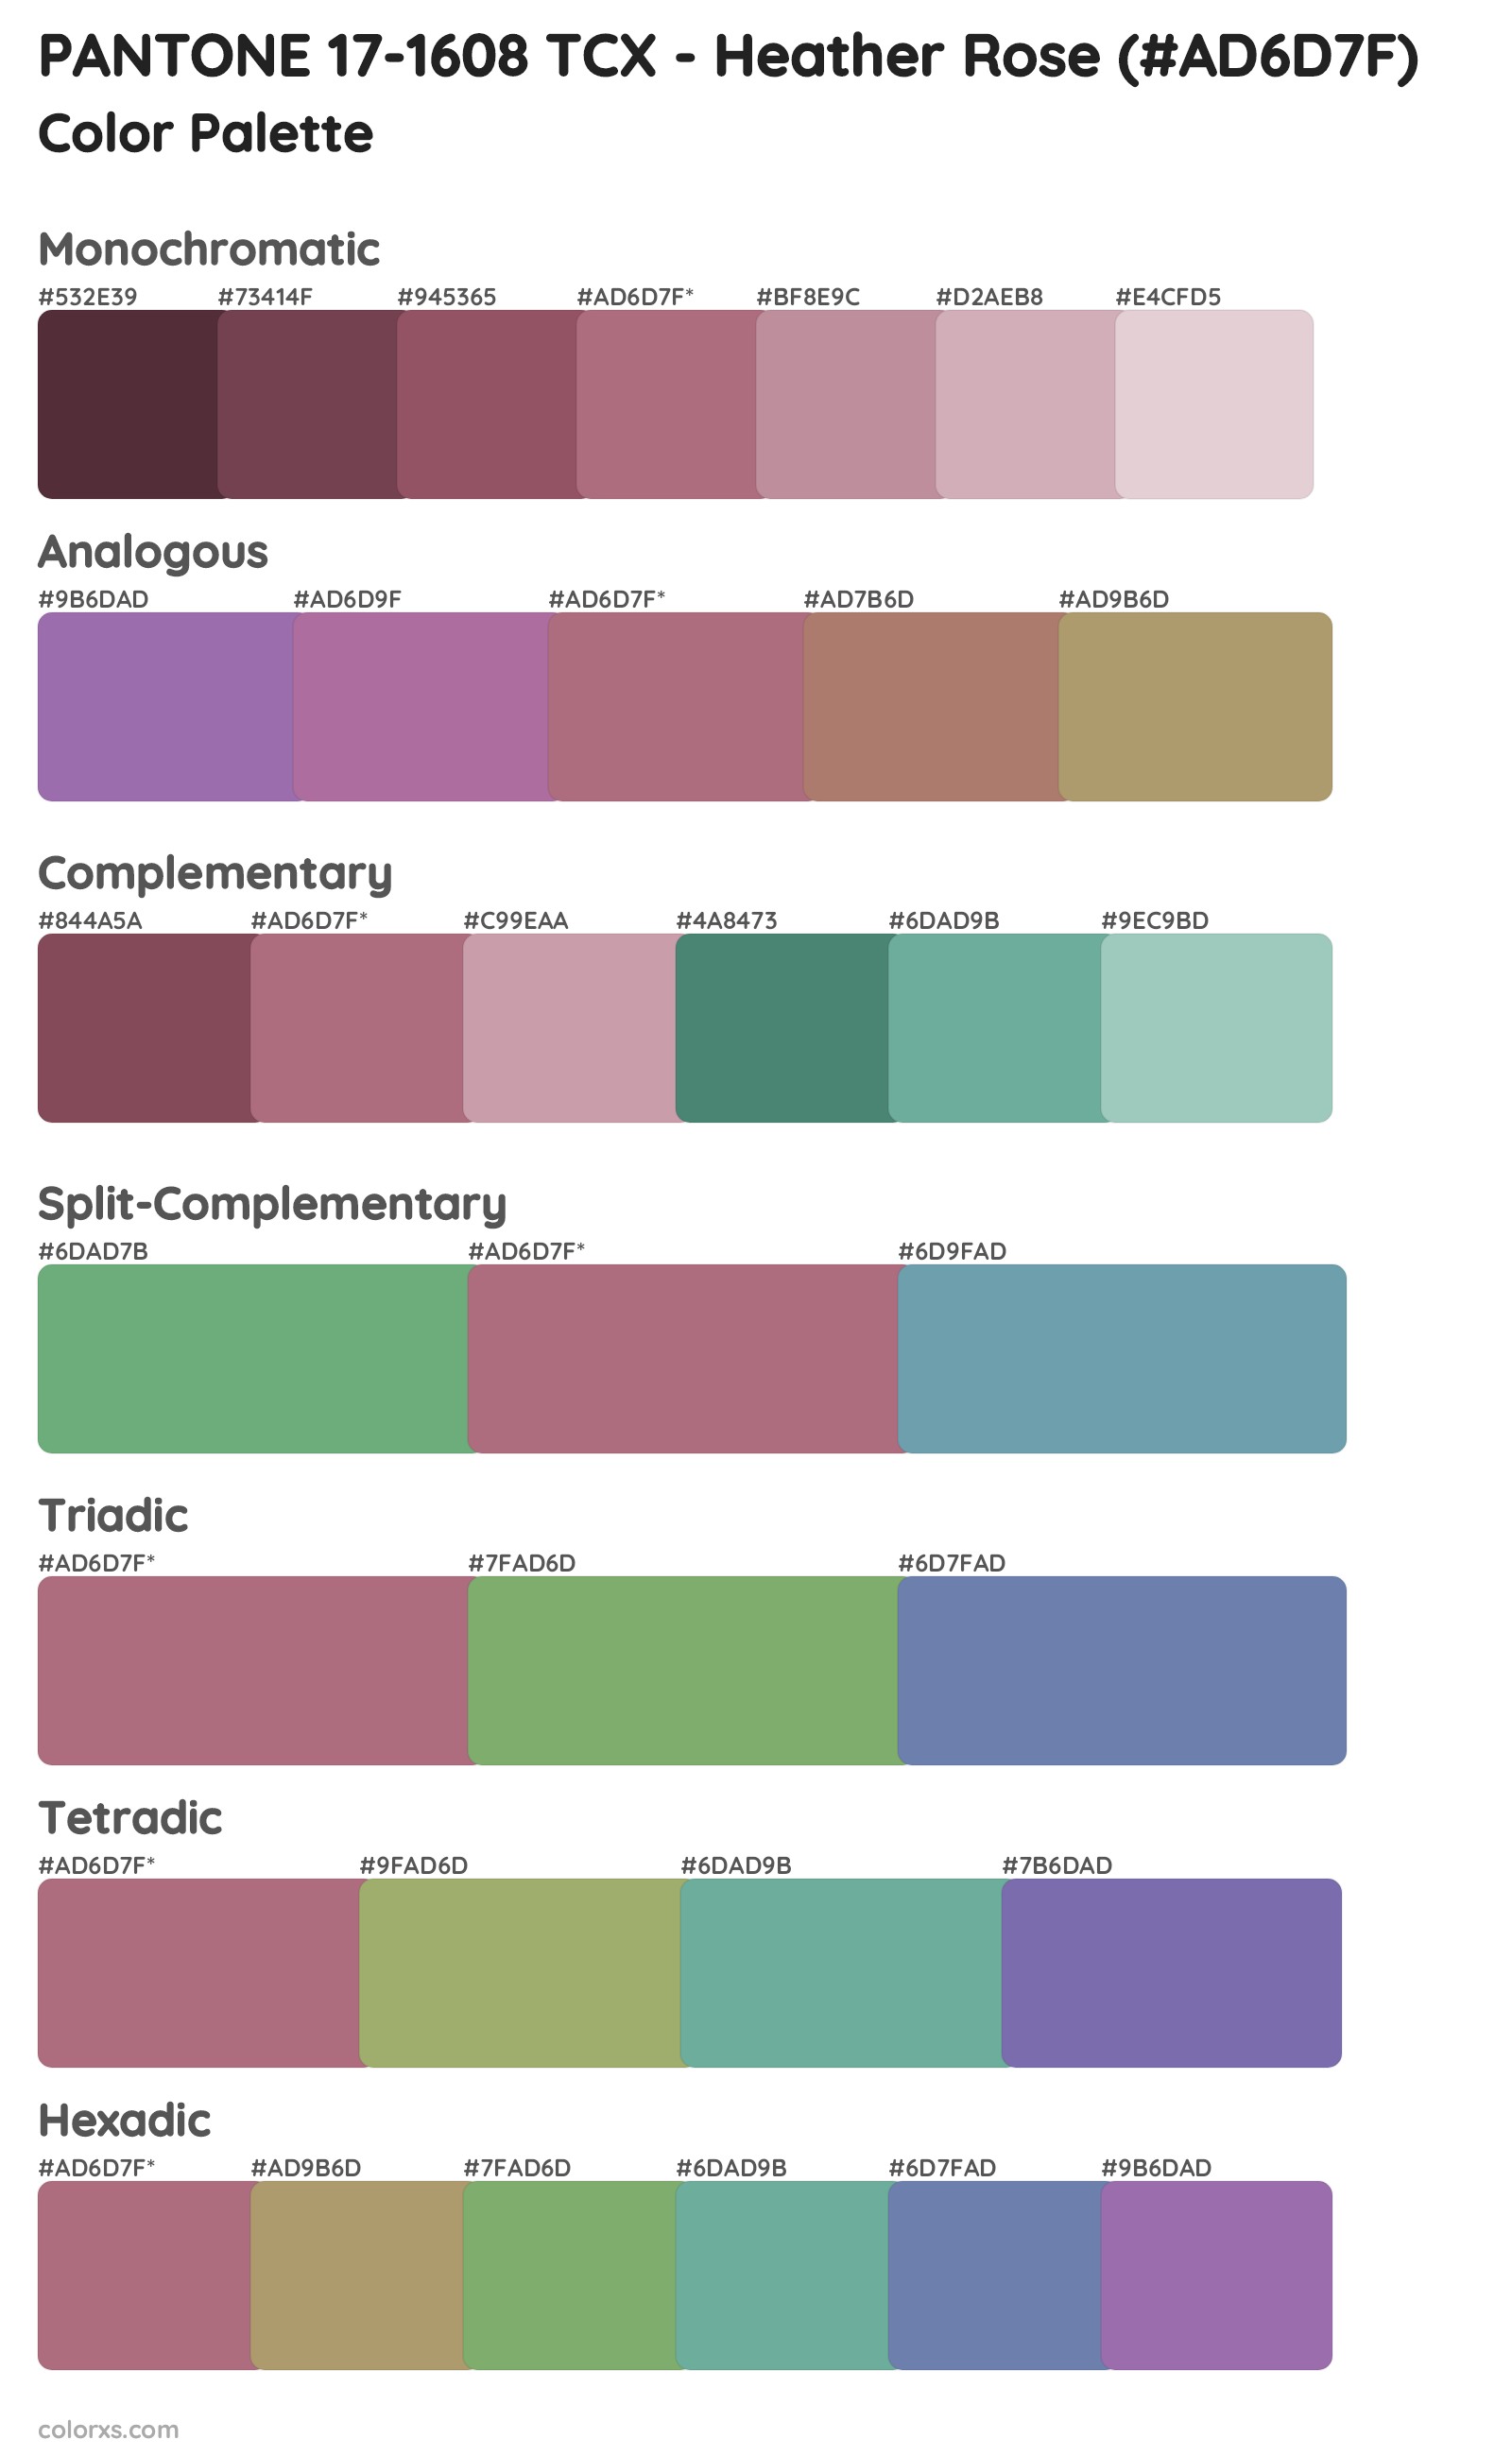 PANTONE 17-1608 TCX - Heather Rose Color Scheme Palettes